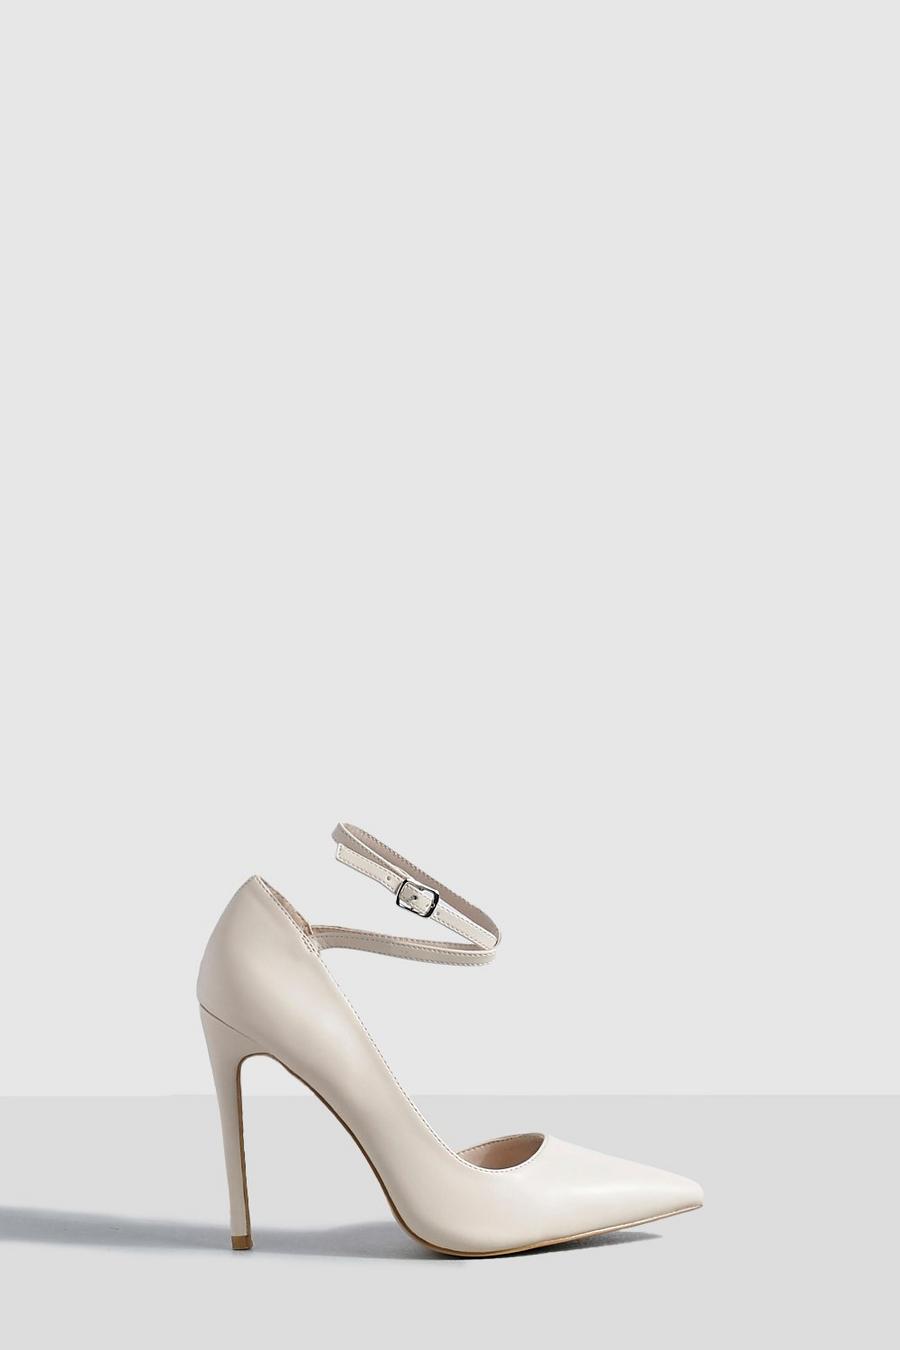 Zapatos de salón con tacón de aguja y tiras cruzadas, Nude image number 1